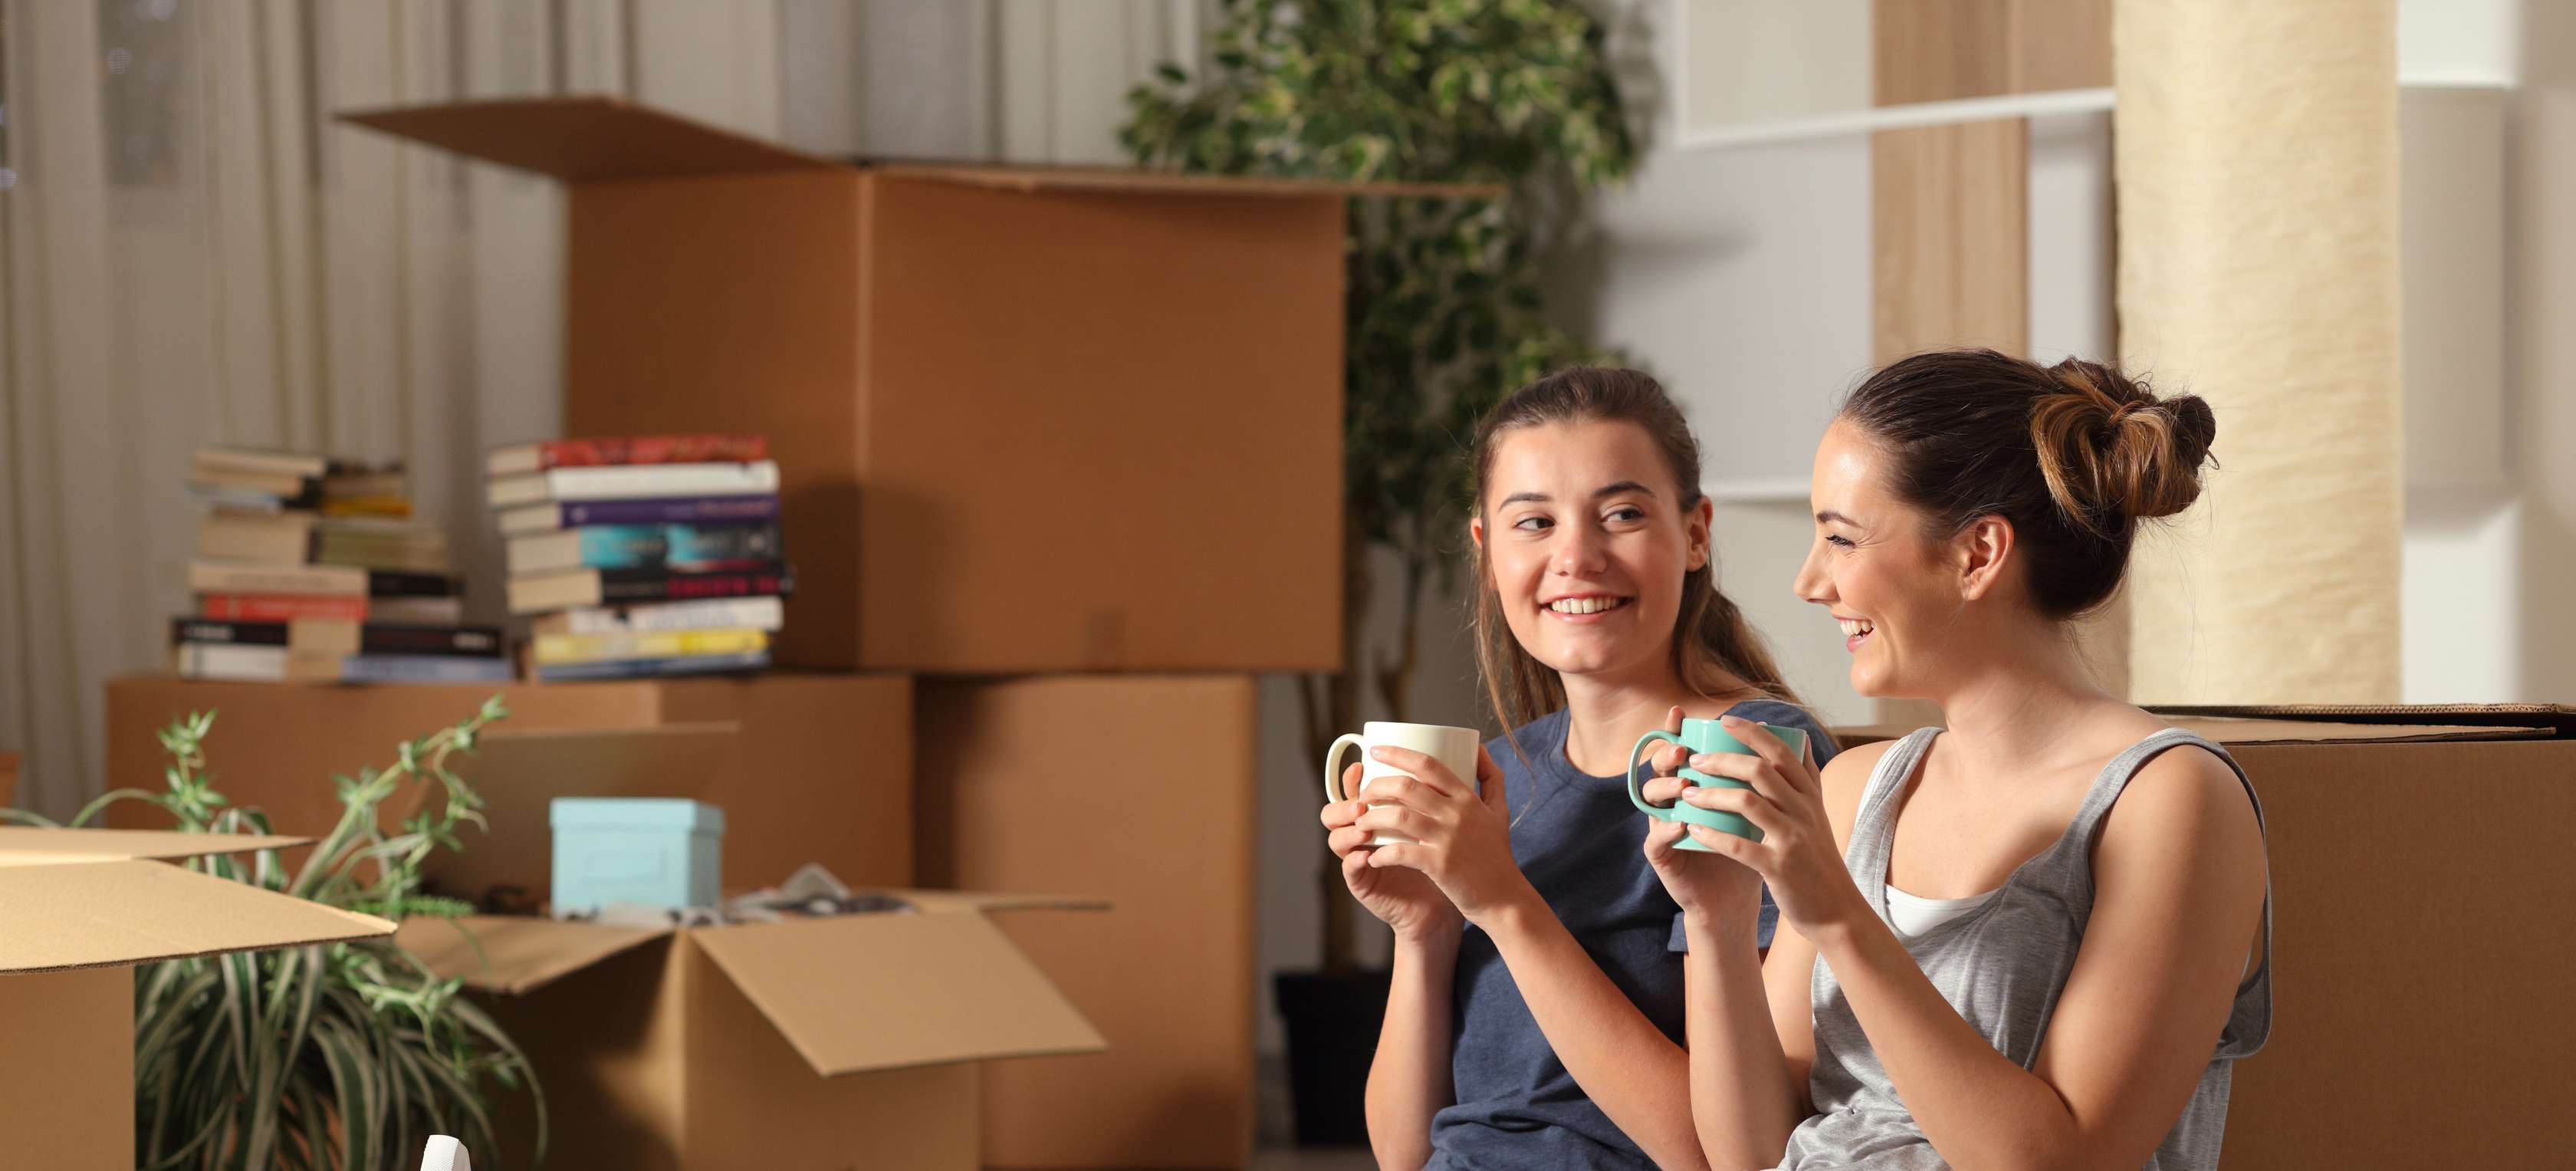 Zwei Mädchen sitzen vor Umzugskartons und trinken Kaffee